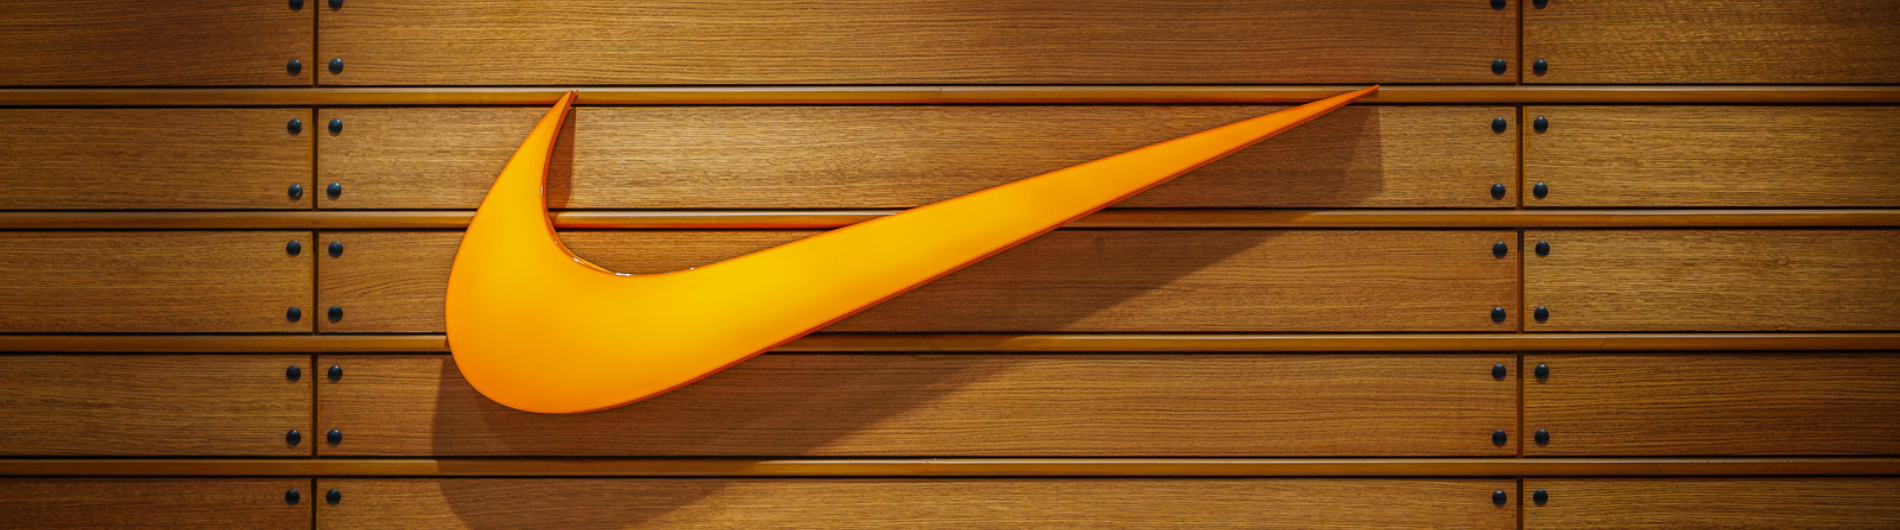 desagradable antepasado demostración Nike presenta resultados de su estrategia de RSC y nuevos objetivos para  2025 - Revista Ganar-Ganar